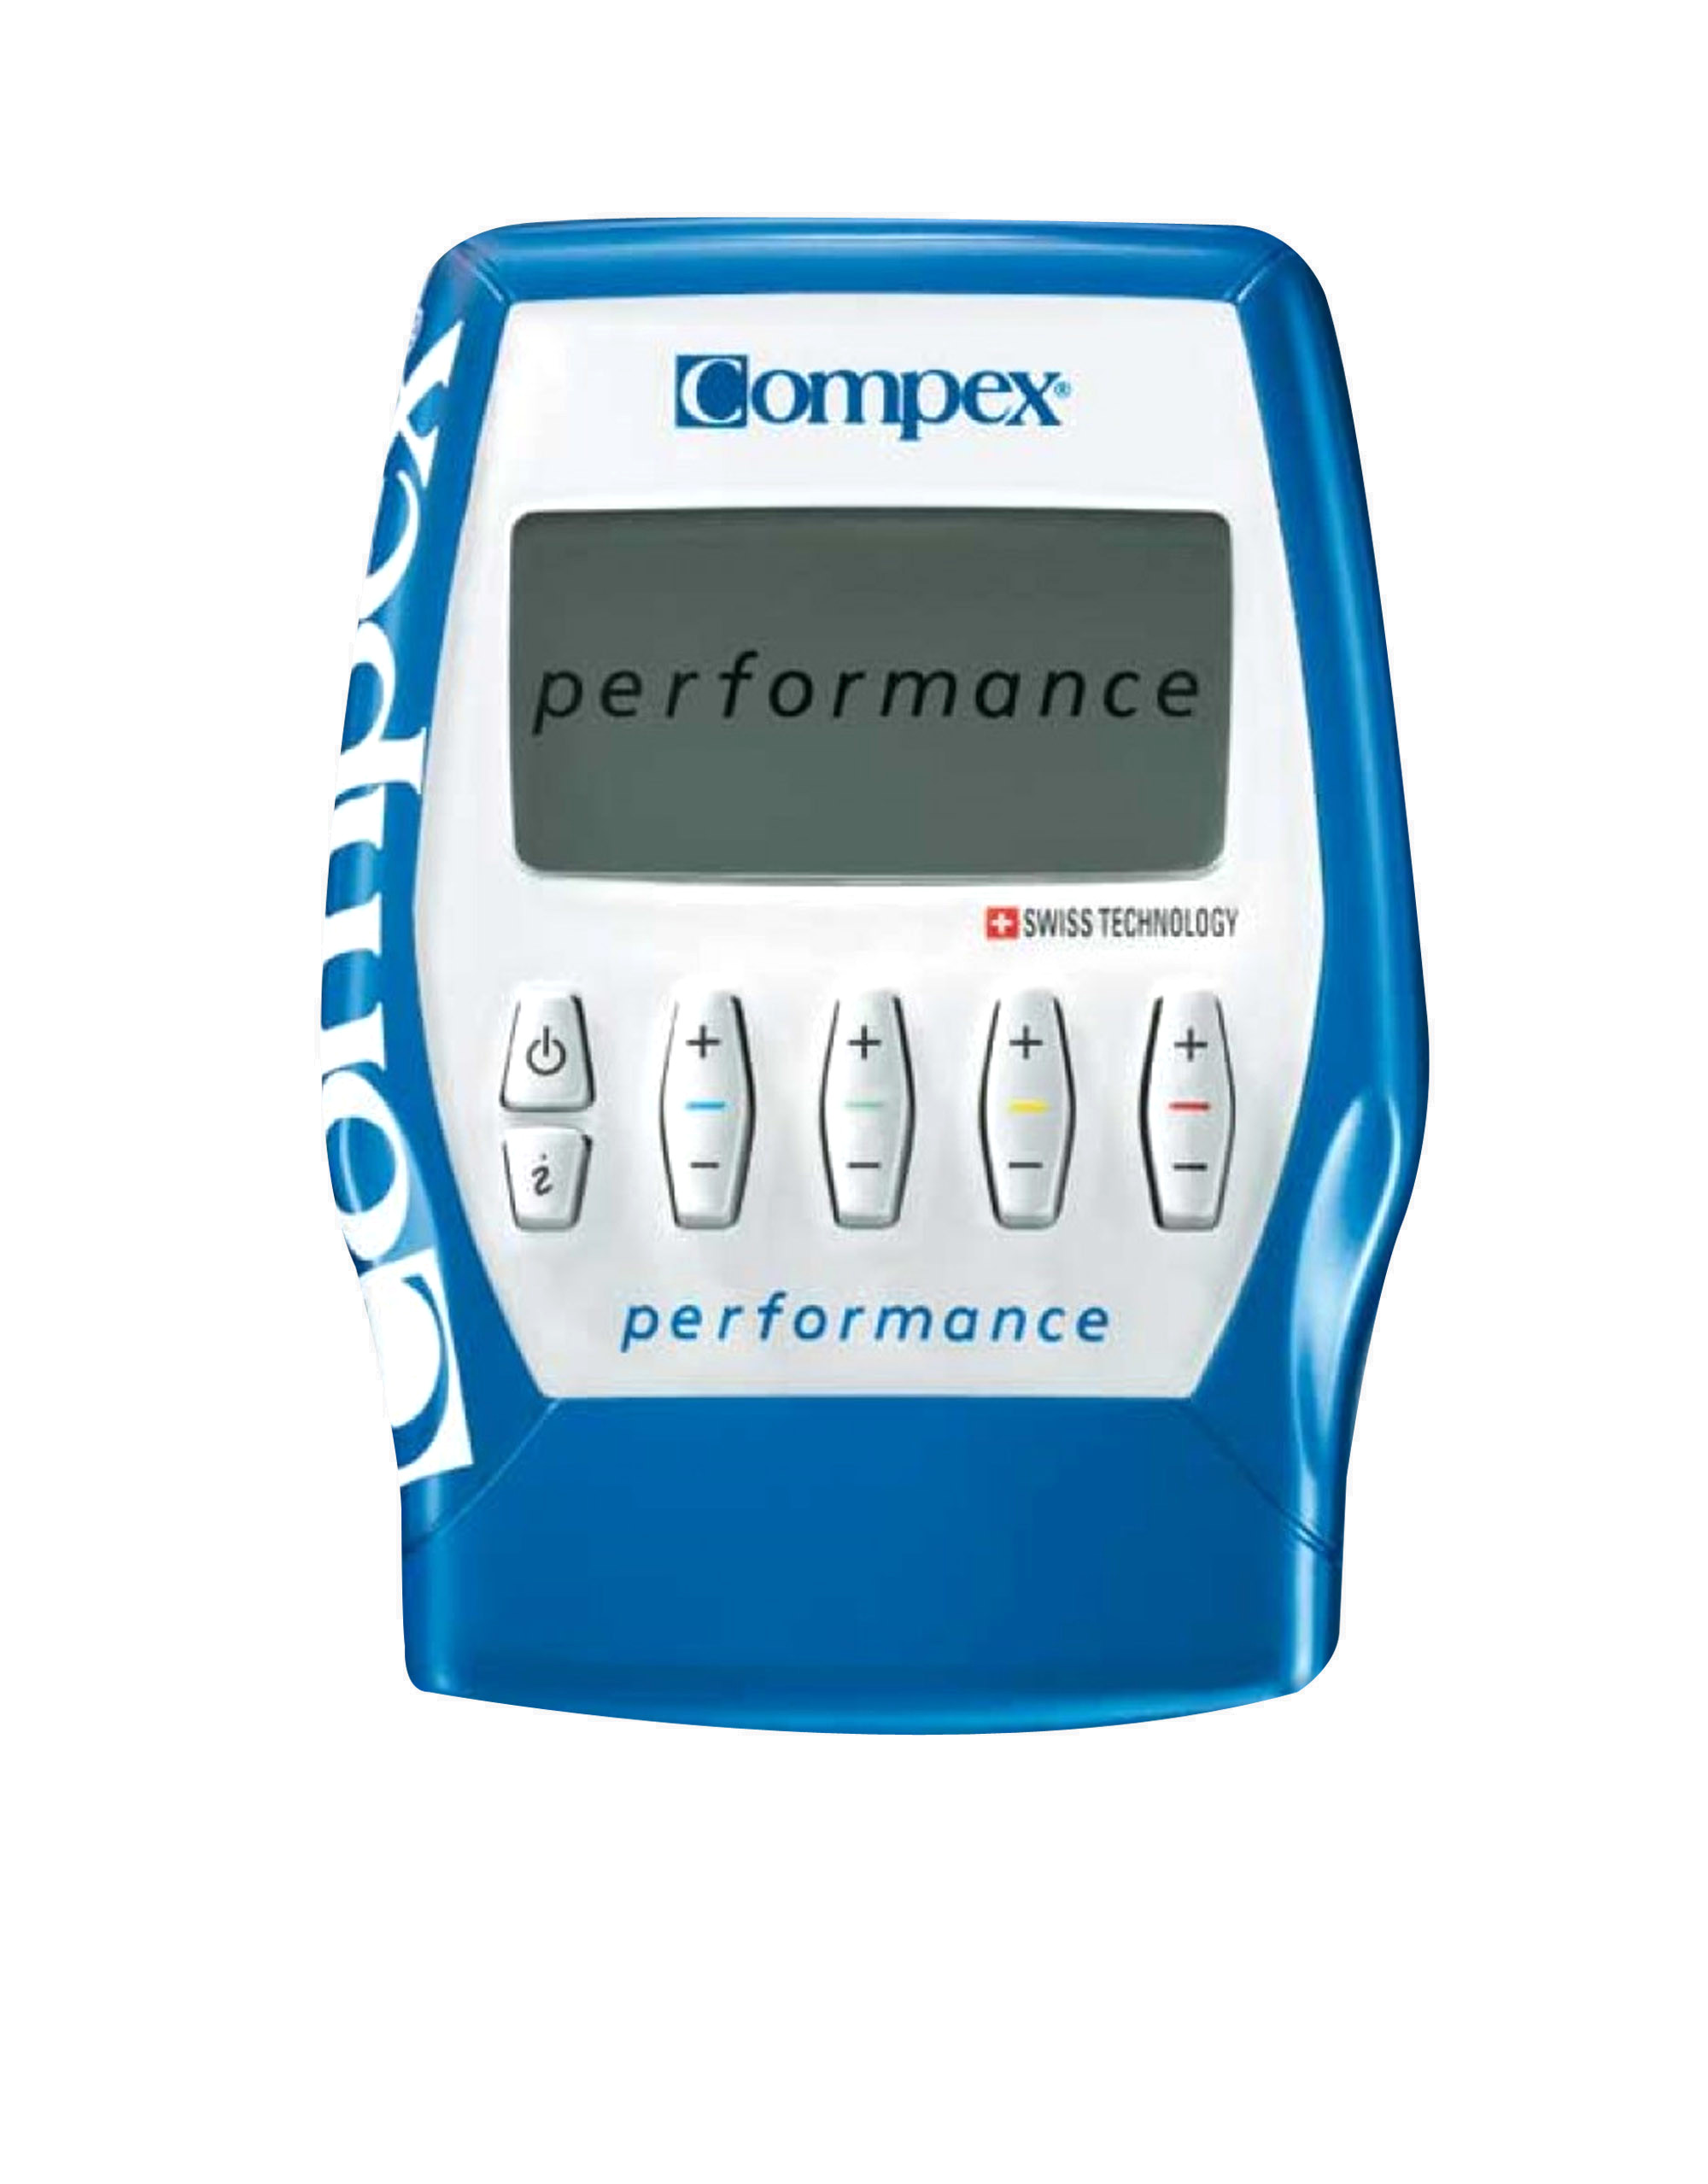 Performance Compex - iafstore.com